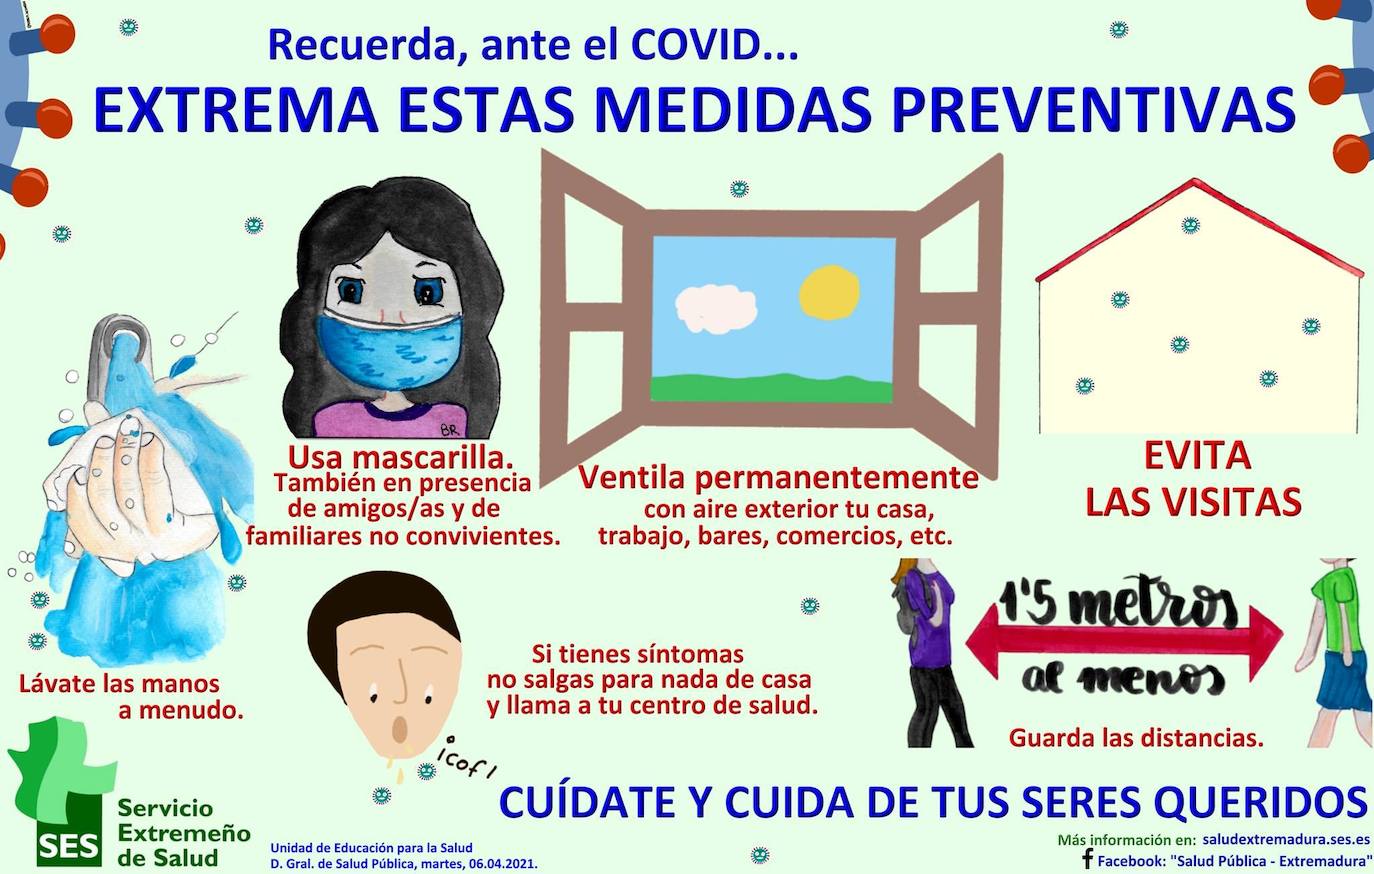 Sanidad Pública comunicó ayer jueves 9 de diciembre un nuevo caso positivo de Covid en Castuera